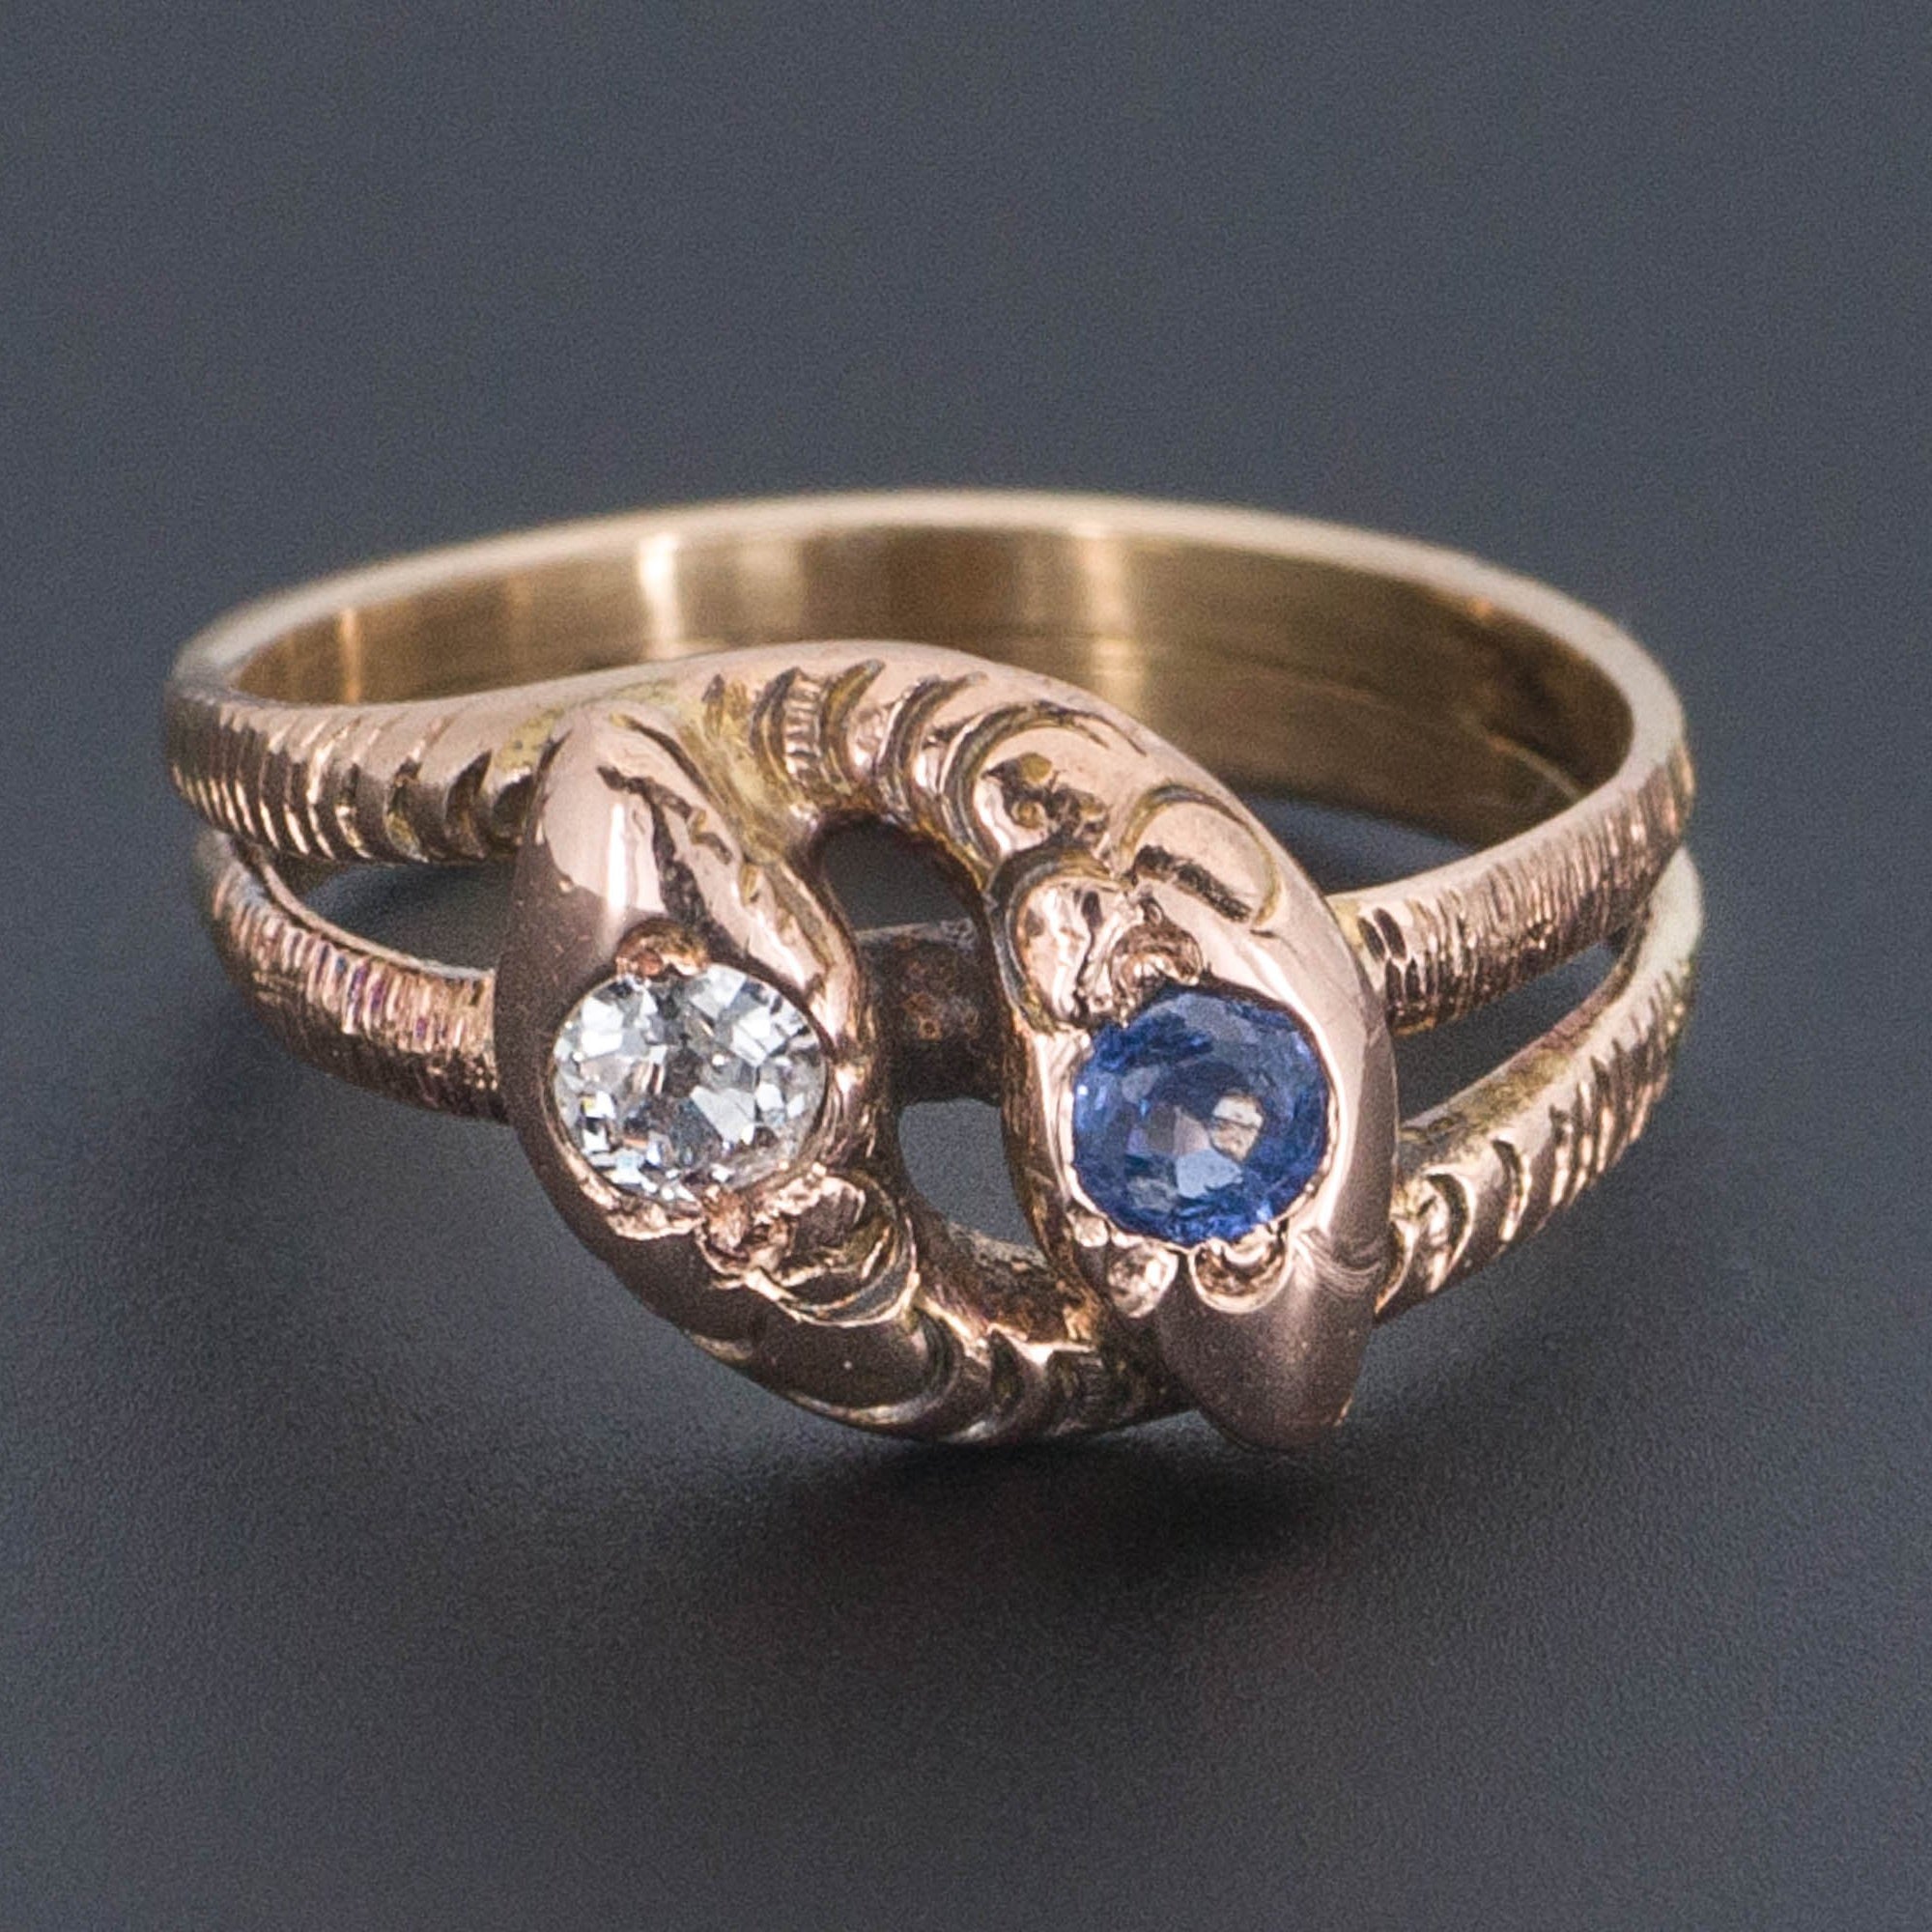 14k Gold Snake Ring | Antique Snake Ring | Diamond and Sapphire Snake Ring | 14k Gold Ring | Wrap Around Ring